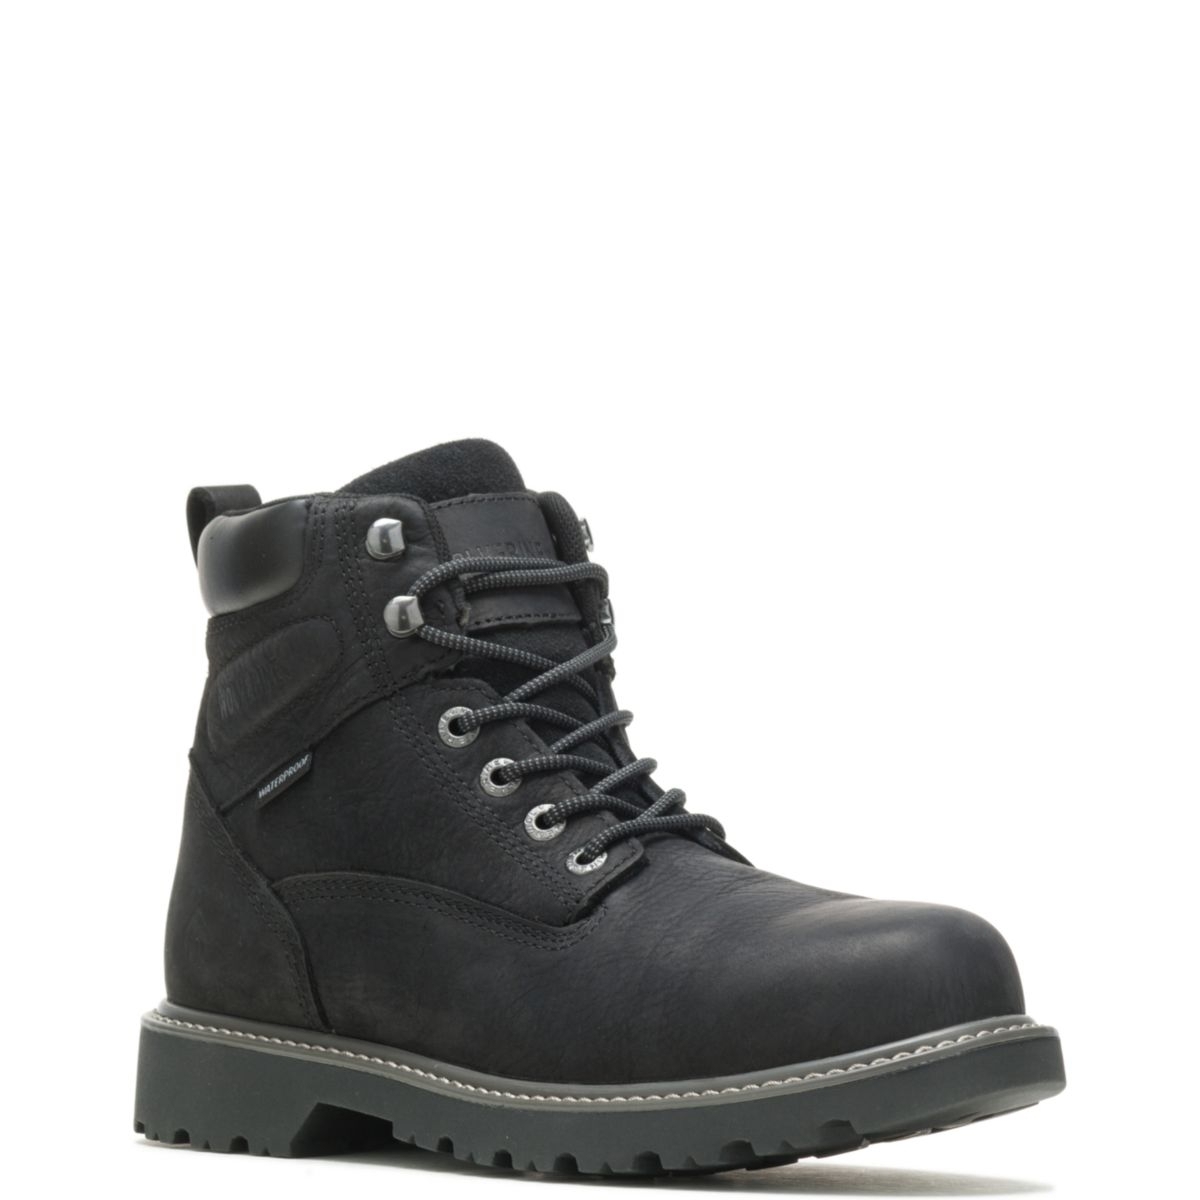 WOLVERINE Men's Floorhand 6 Waterproof Steel Toe Work Boot Black - W10694 BLACK - BLACK, 10.5